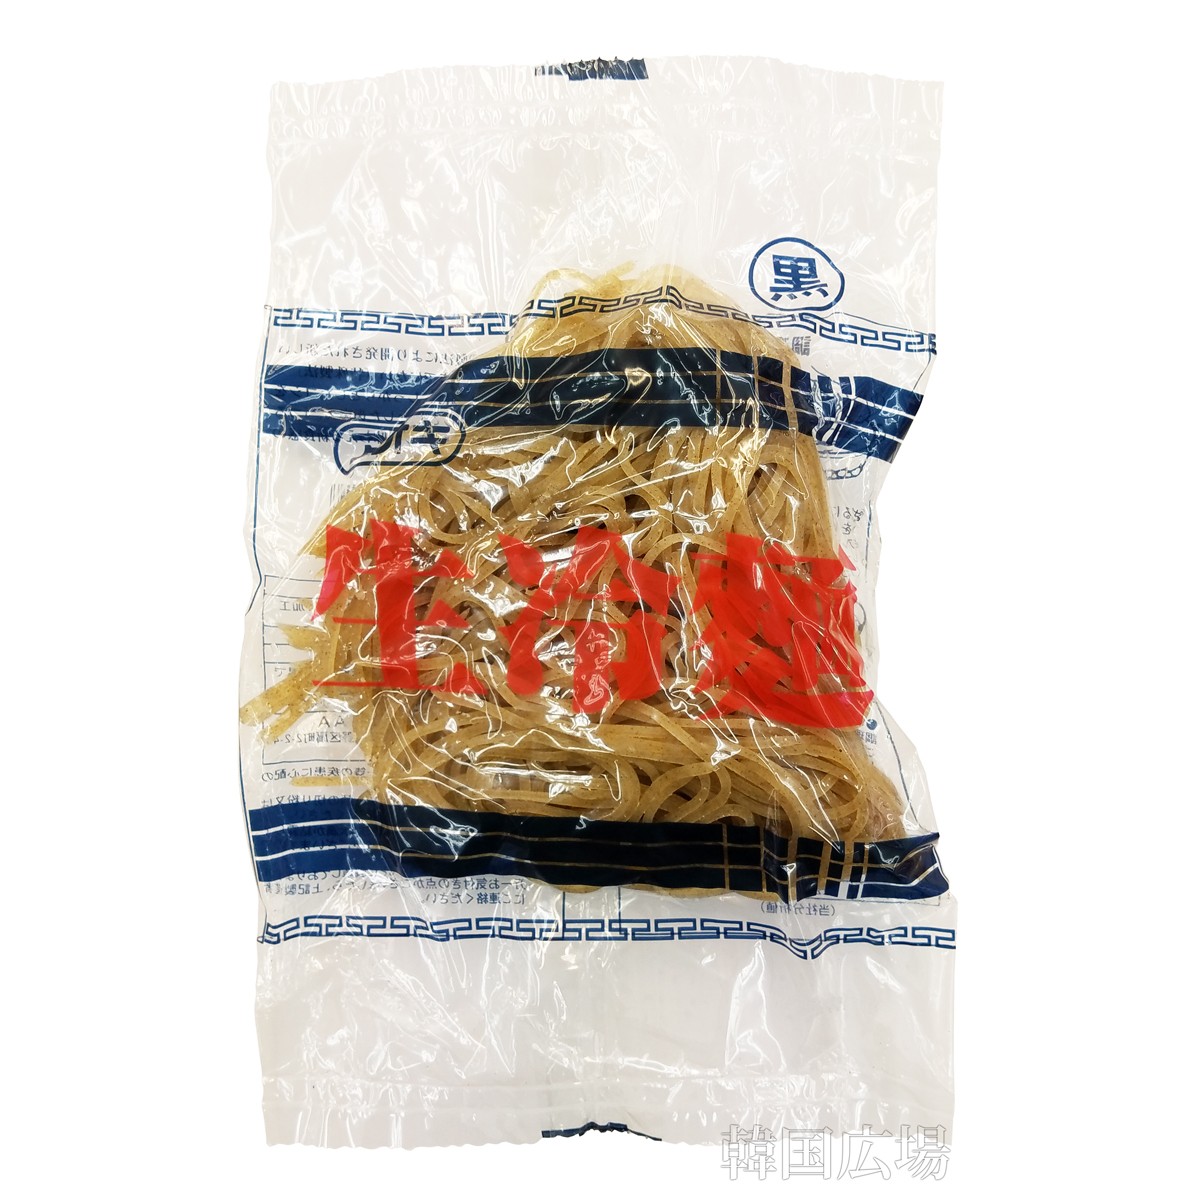 アオキ 生冷麺 160g 黒×1袋の商品画像